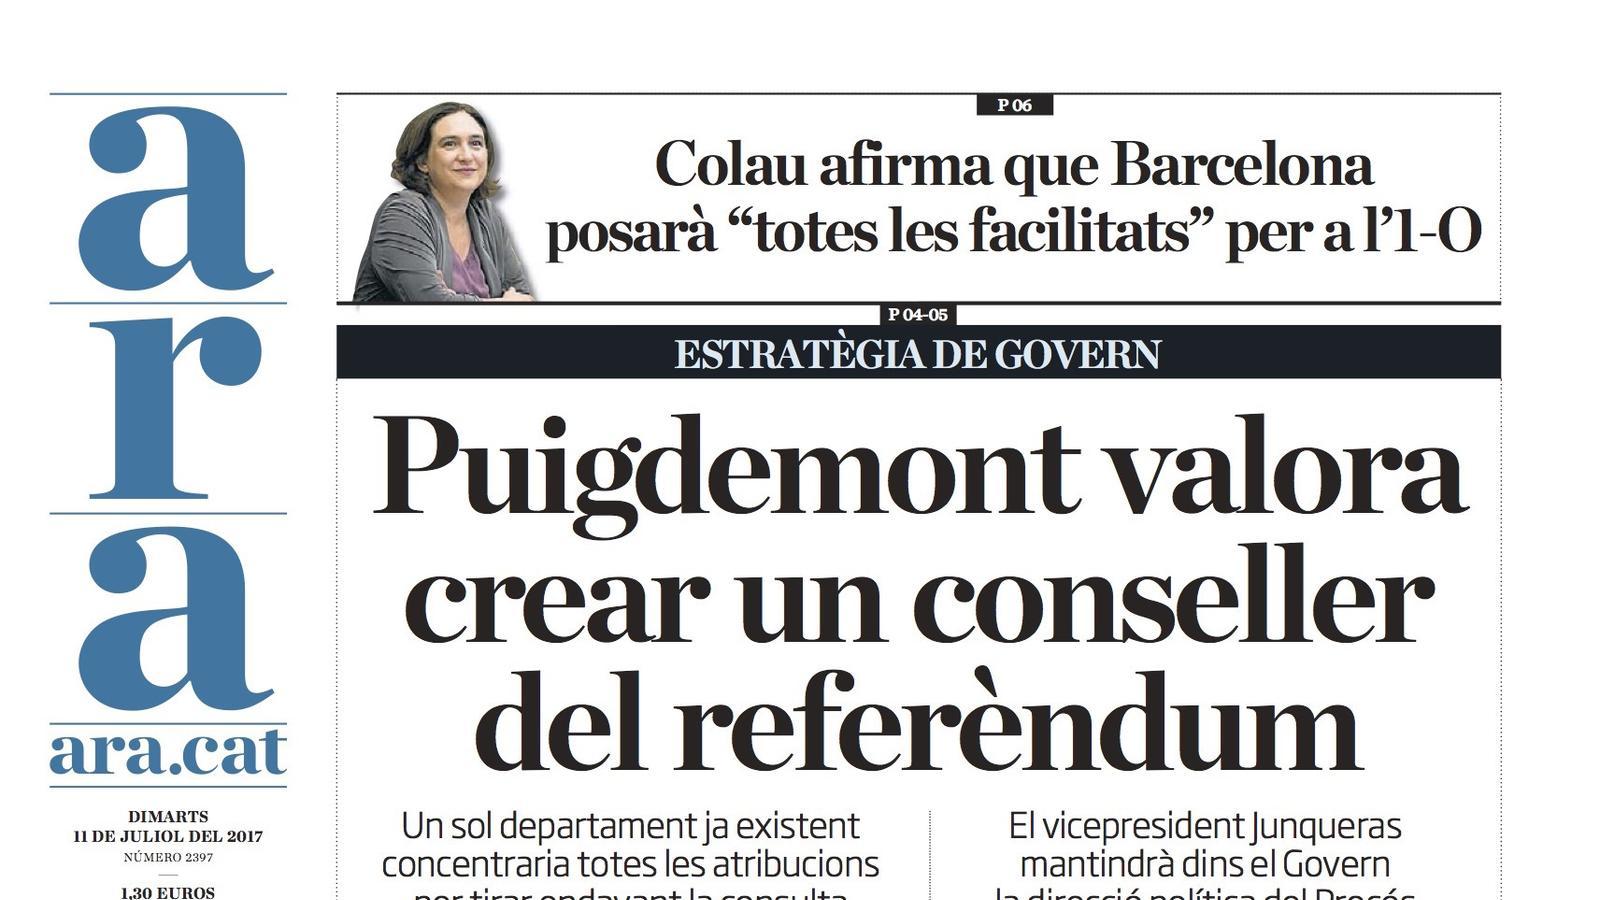 "Puigdemont valora crear un conseller del referèndum", portada de l'ARA